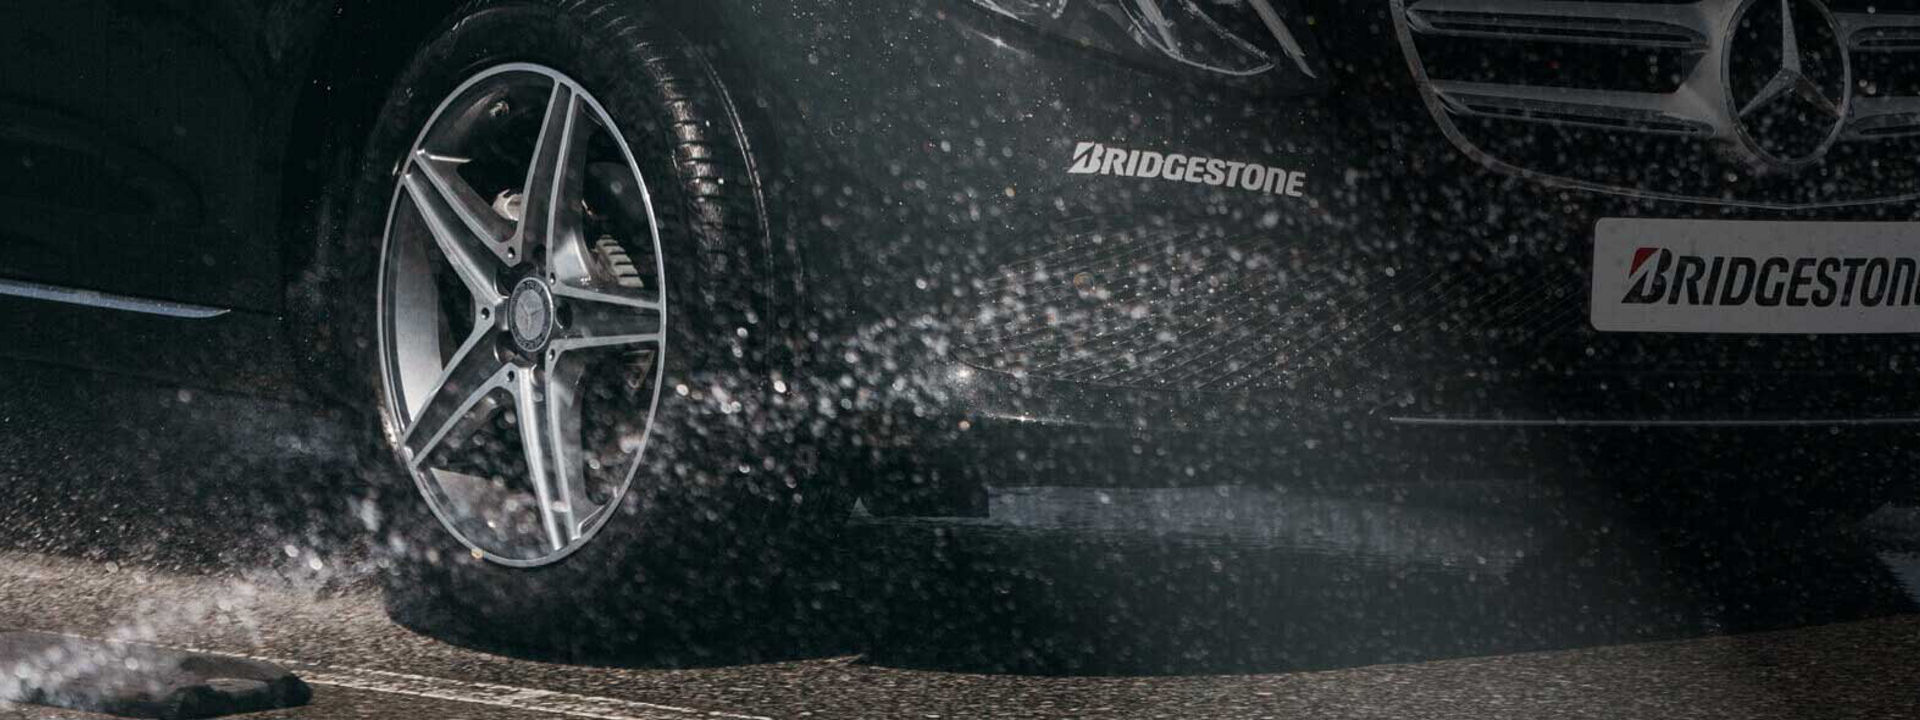 Tento obrázek zachycuje detail pneumatiky Bridgestone Turanza jedoucí za mokra